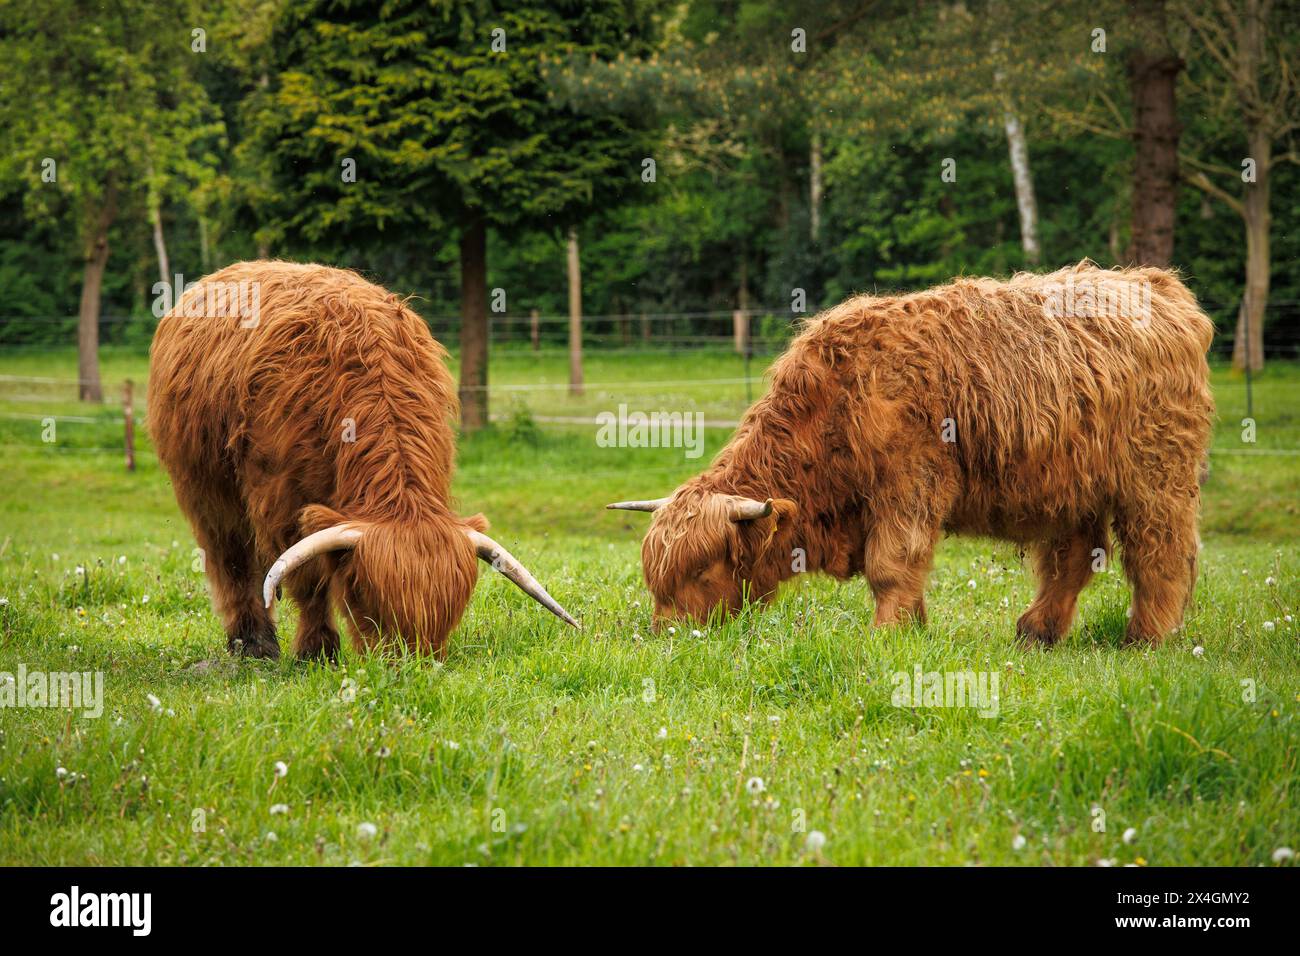 Bestiame di Galloway su un prato a Worpswede, bassa Sassonia, Germania. Galloway-Rinder auf einer Wiese a Worpswede, Niedersachsen, Deutschland. Foto Stock